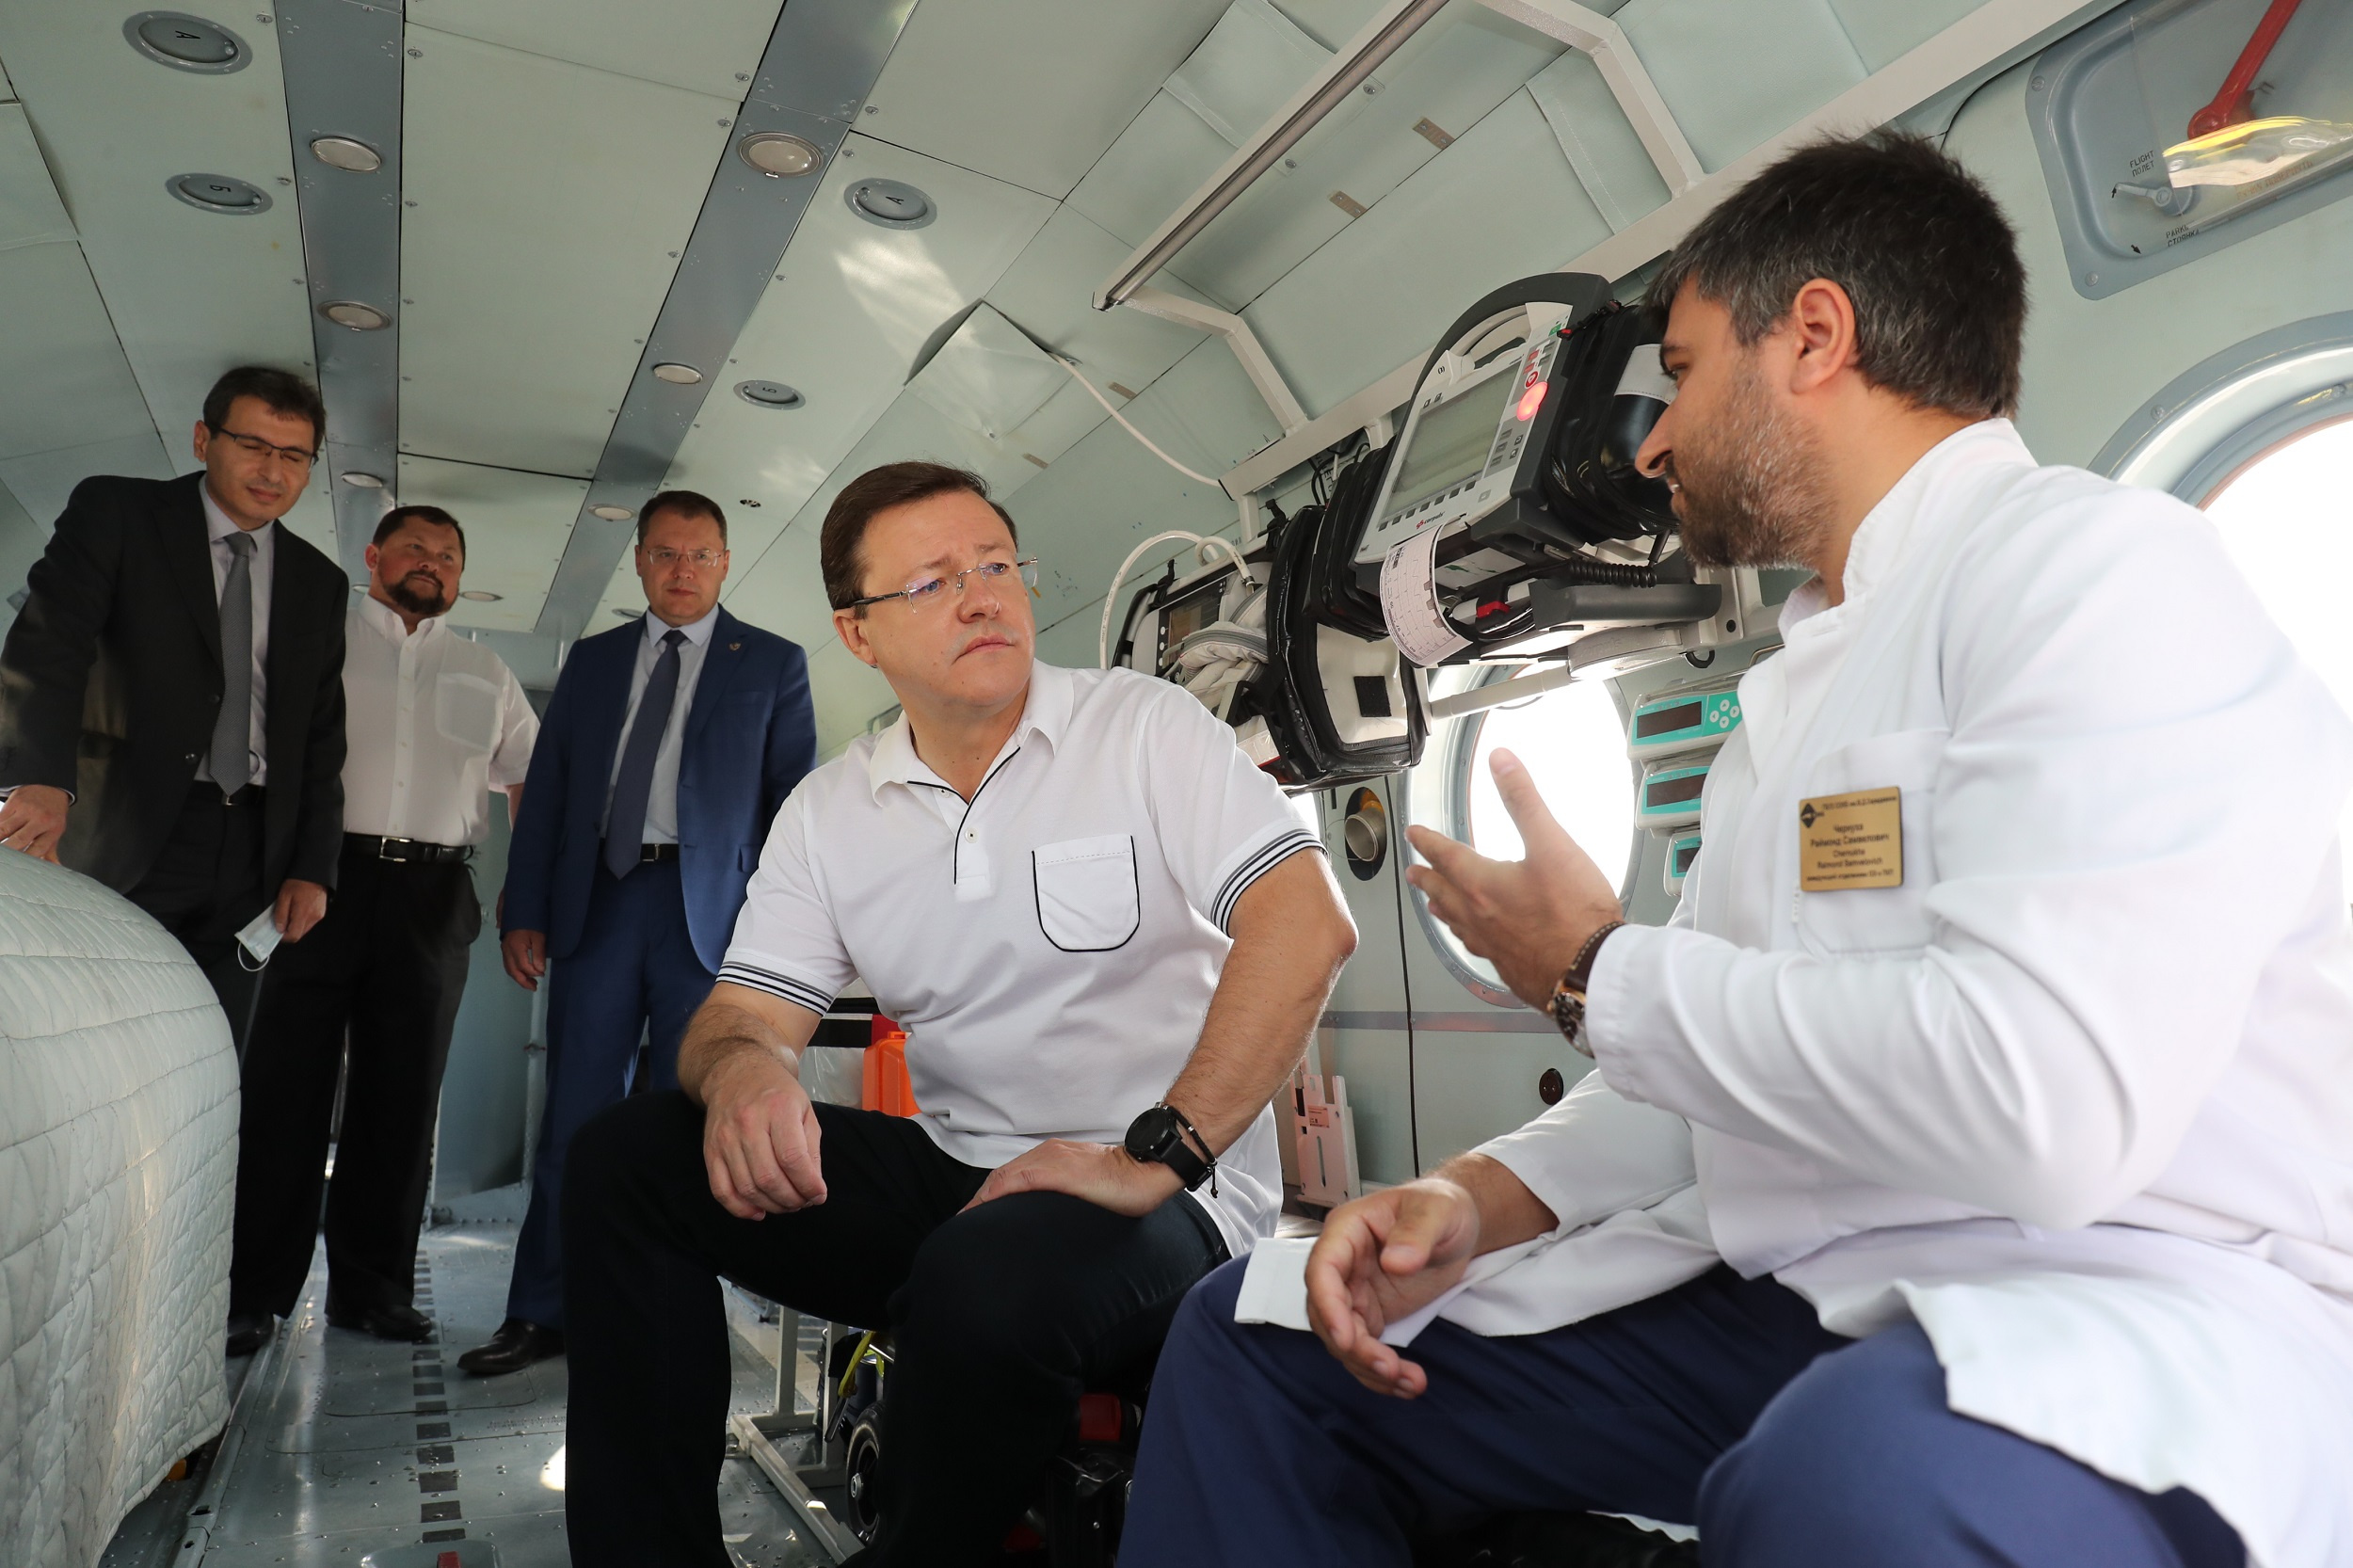 Медики рассказал главе региона об особенностях работы с пациентами на борту вертолета